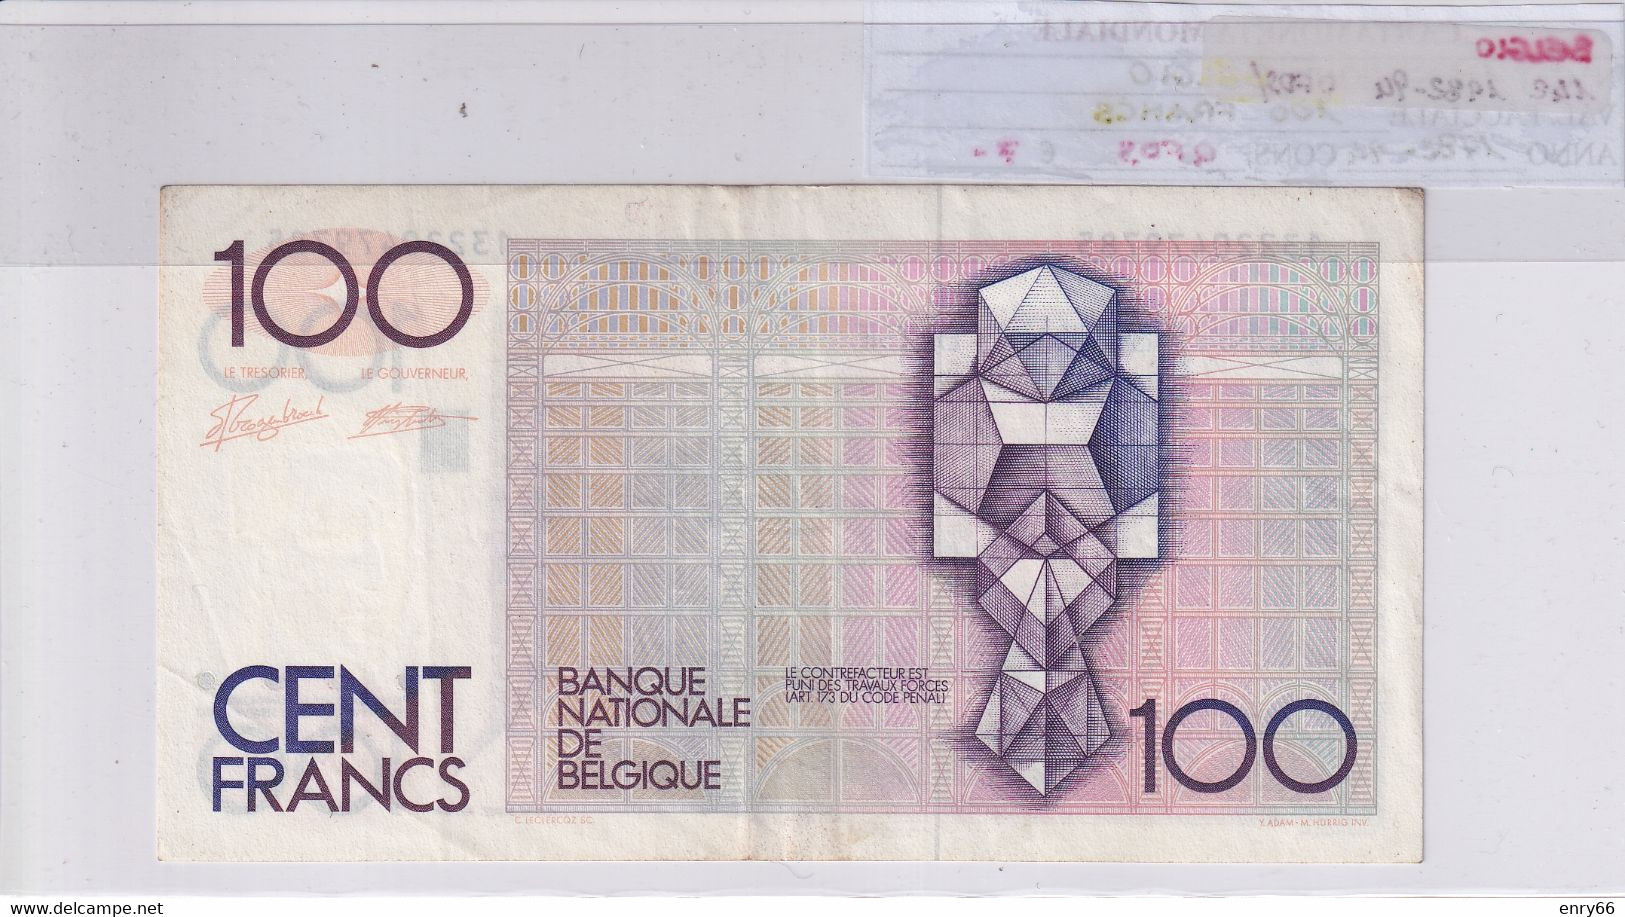 BELGIO 100 FRANCS 1982-94 P142 - 100 Francs